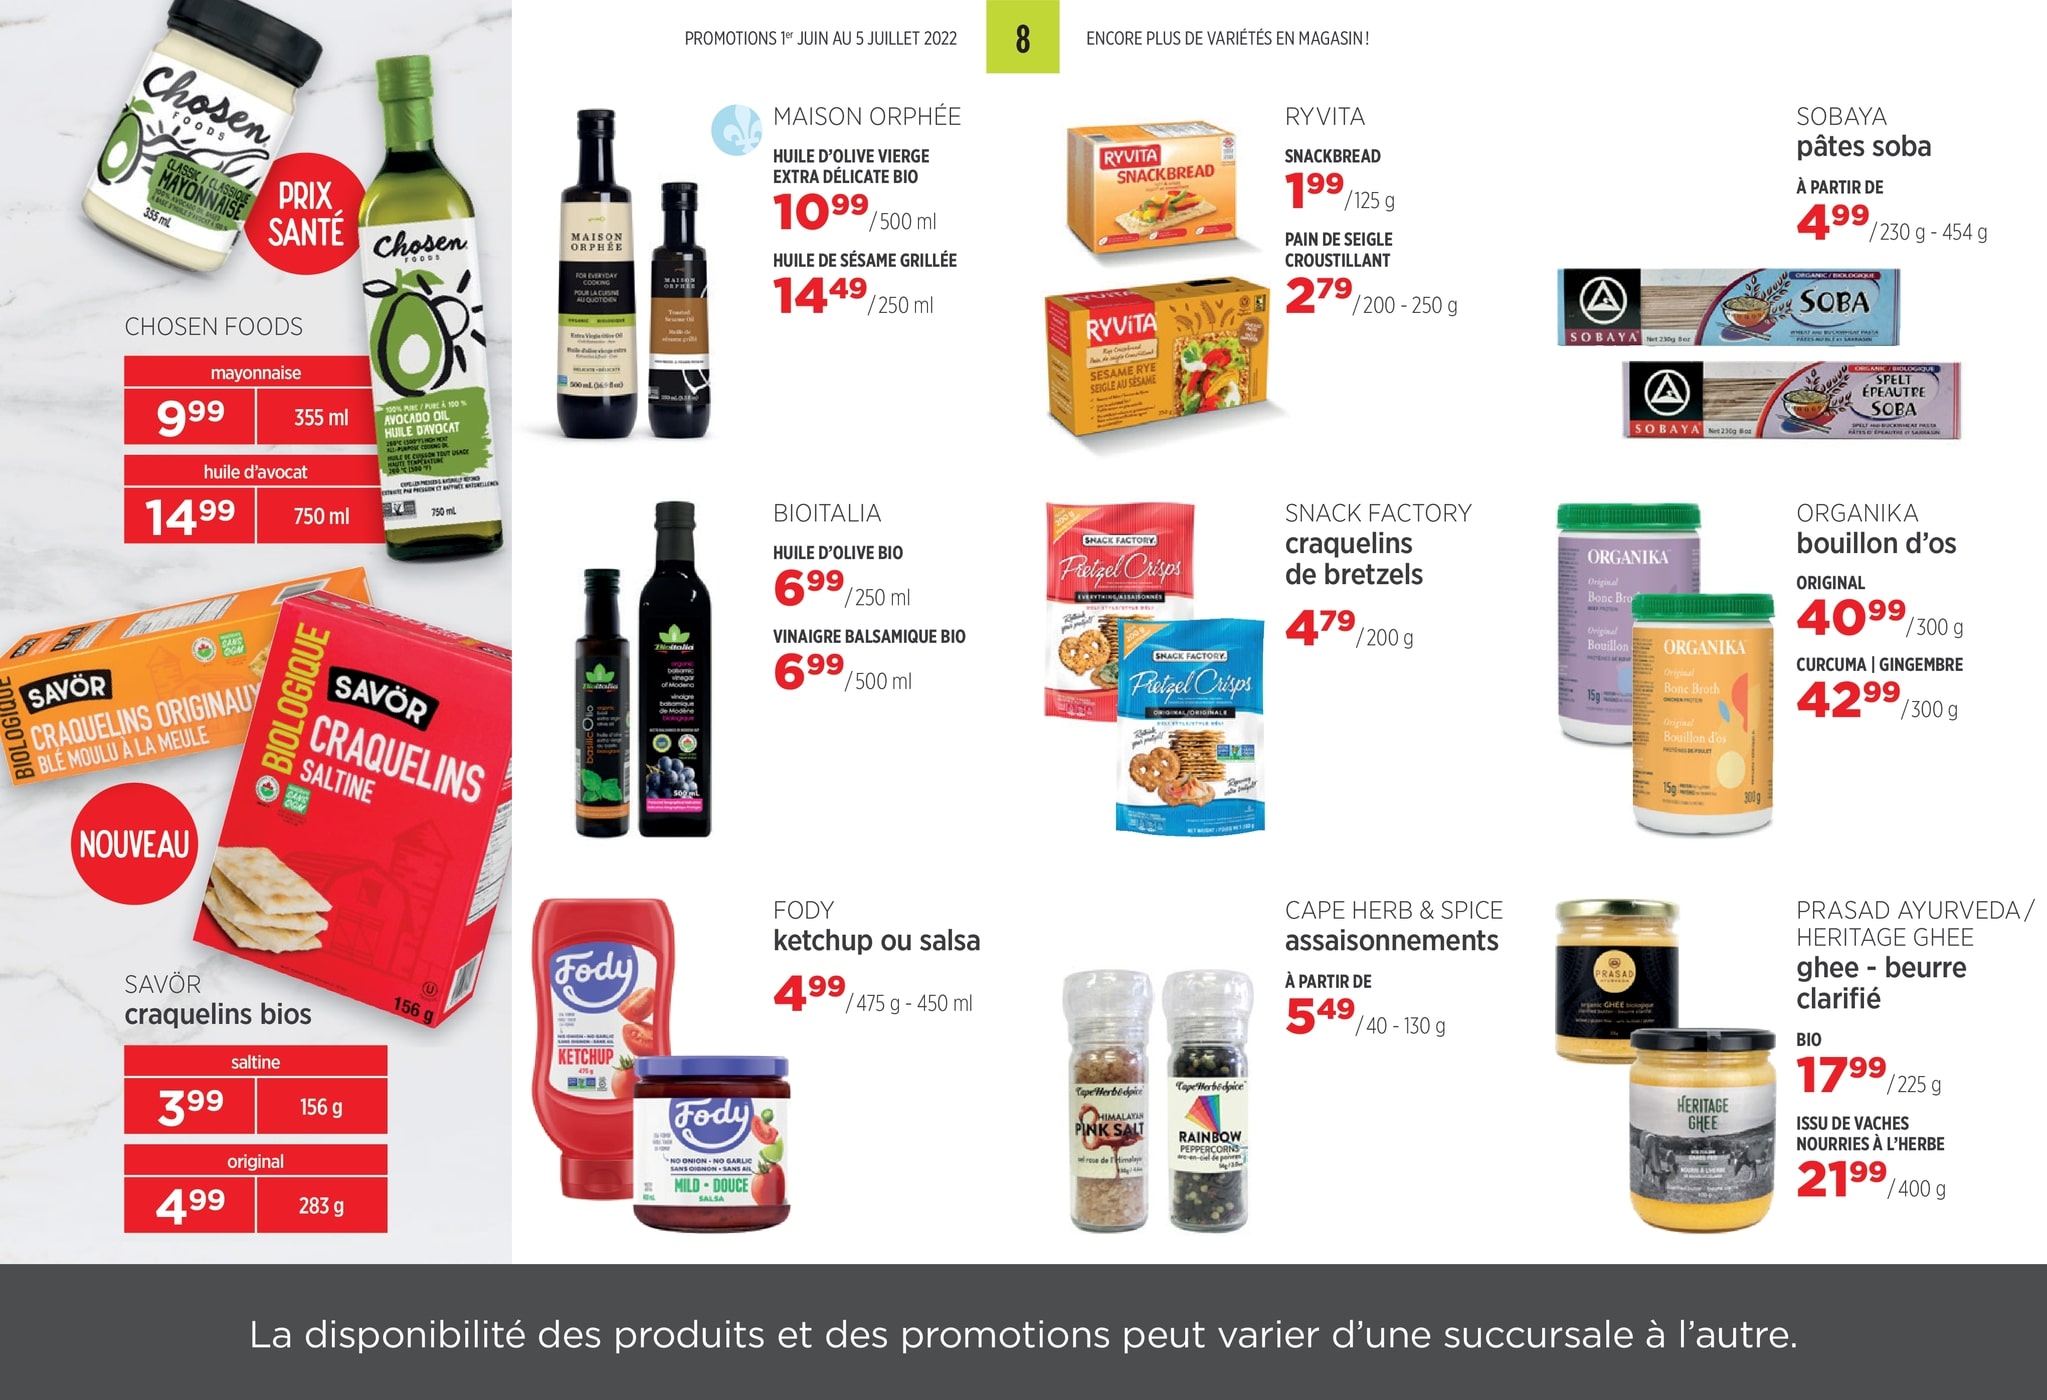 Circulaire Avril - Supermarché Santé - Page 8